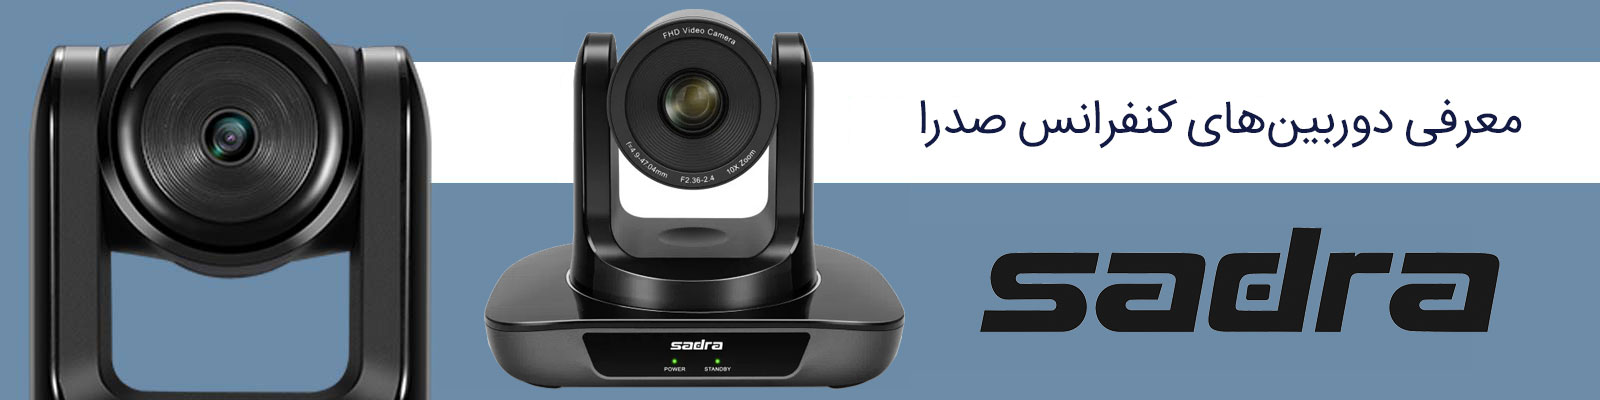 معرفی دوربین های کنفرانسی صدرا سری USB 2